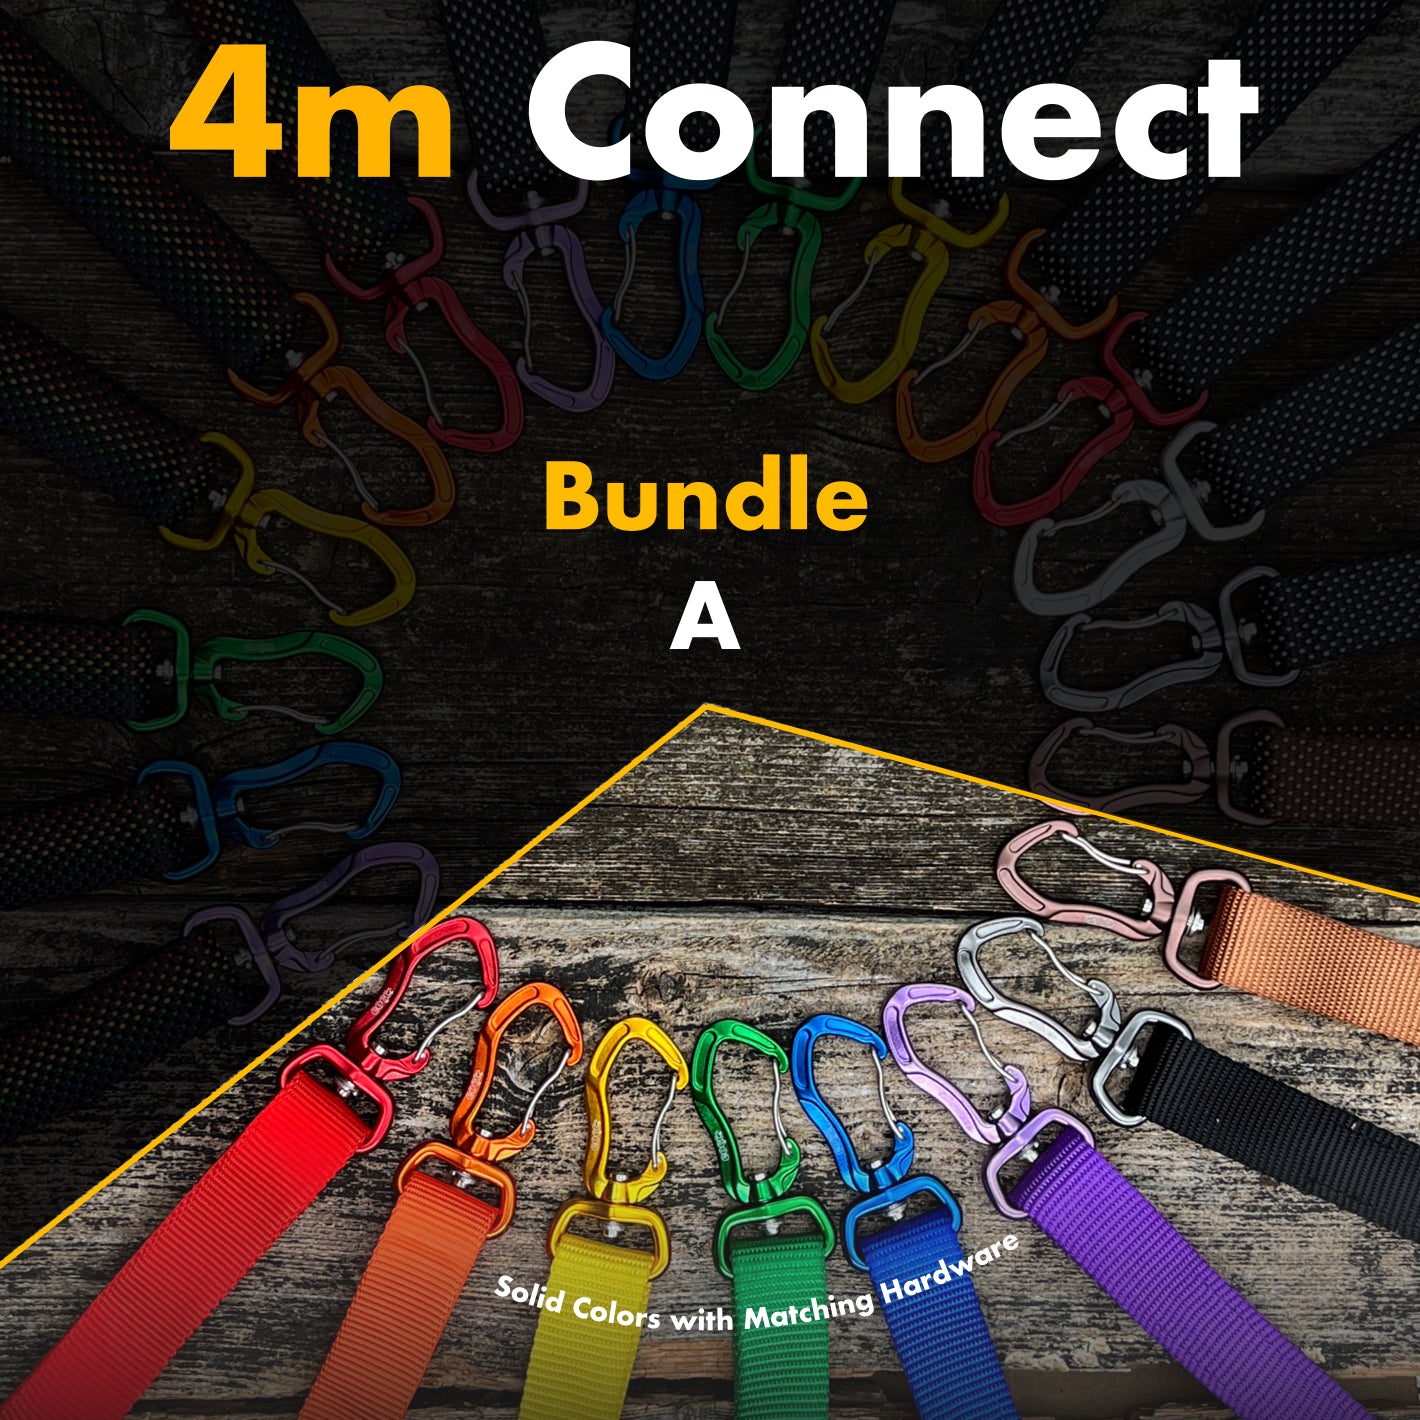 4m Connect - Bundle A - Solid Colors